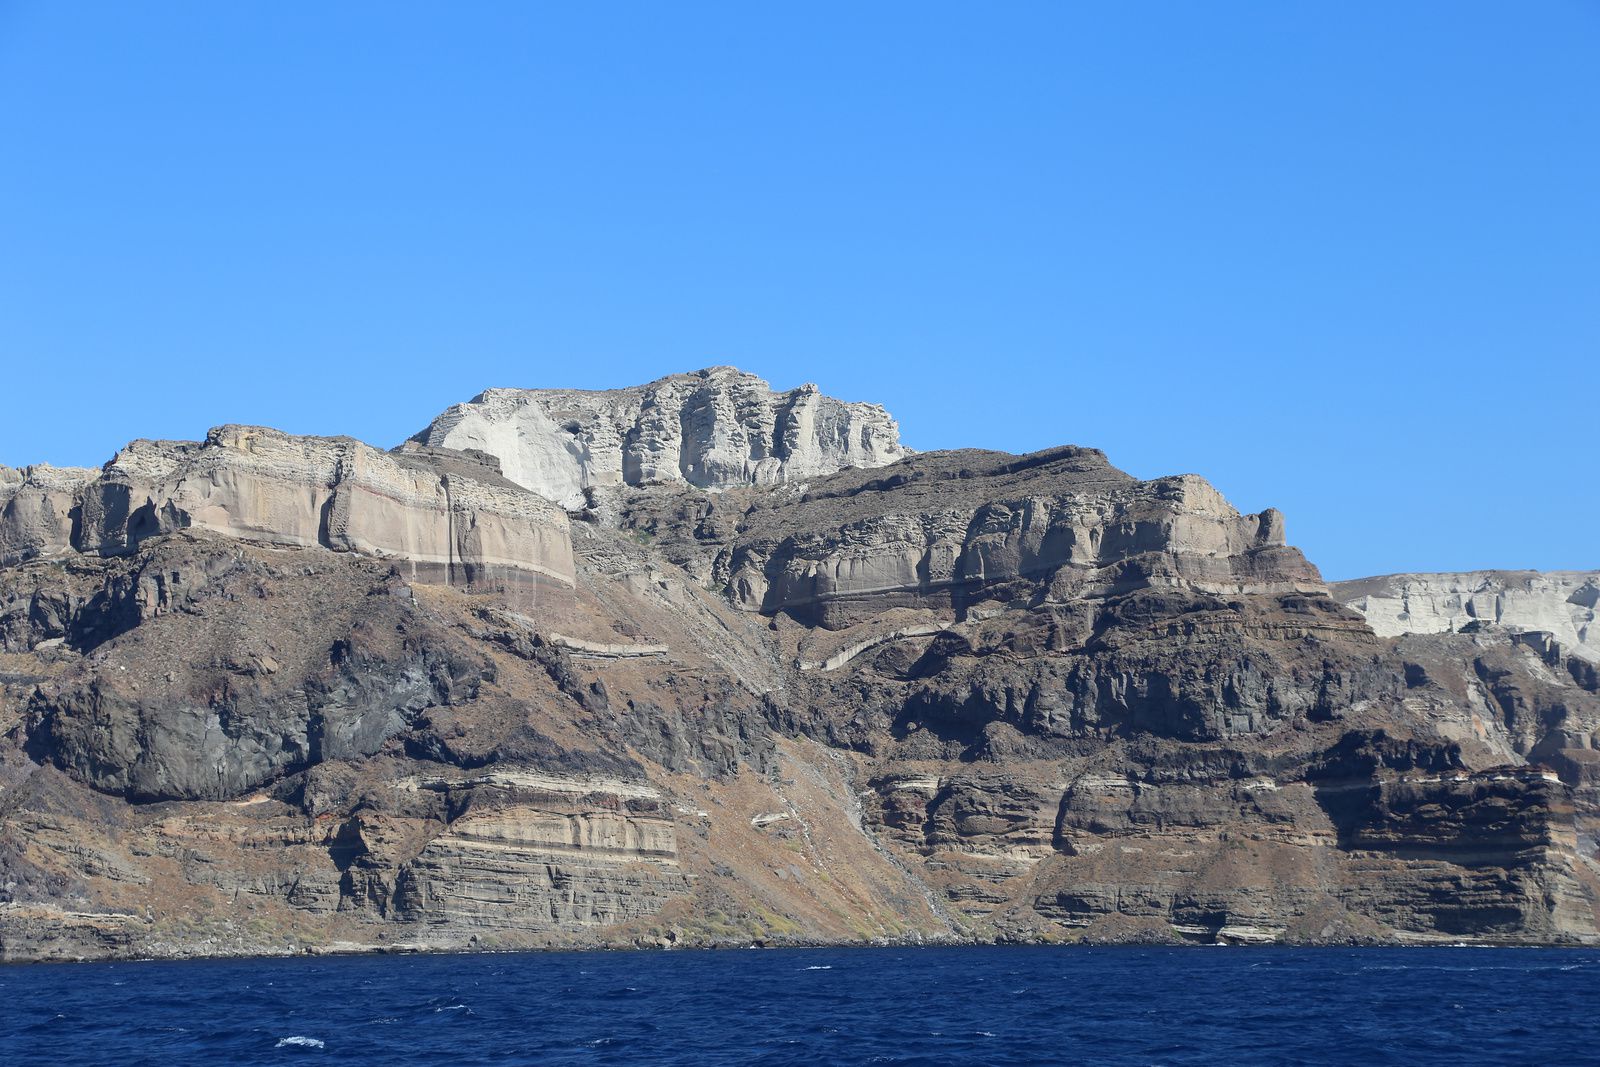 Santorini - pumice deposits above the cliffs of the caldera, internal side - photo © Bernard Duyck 09.2019